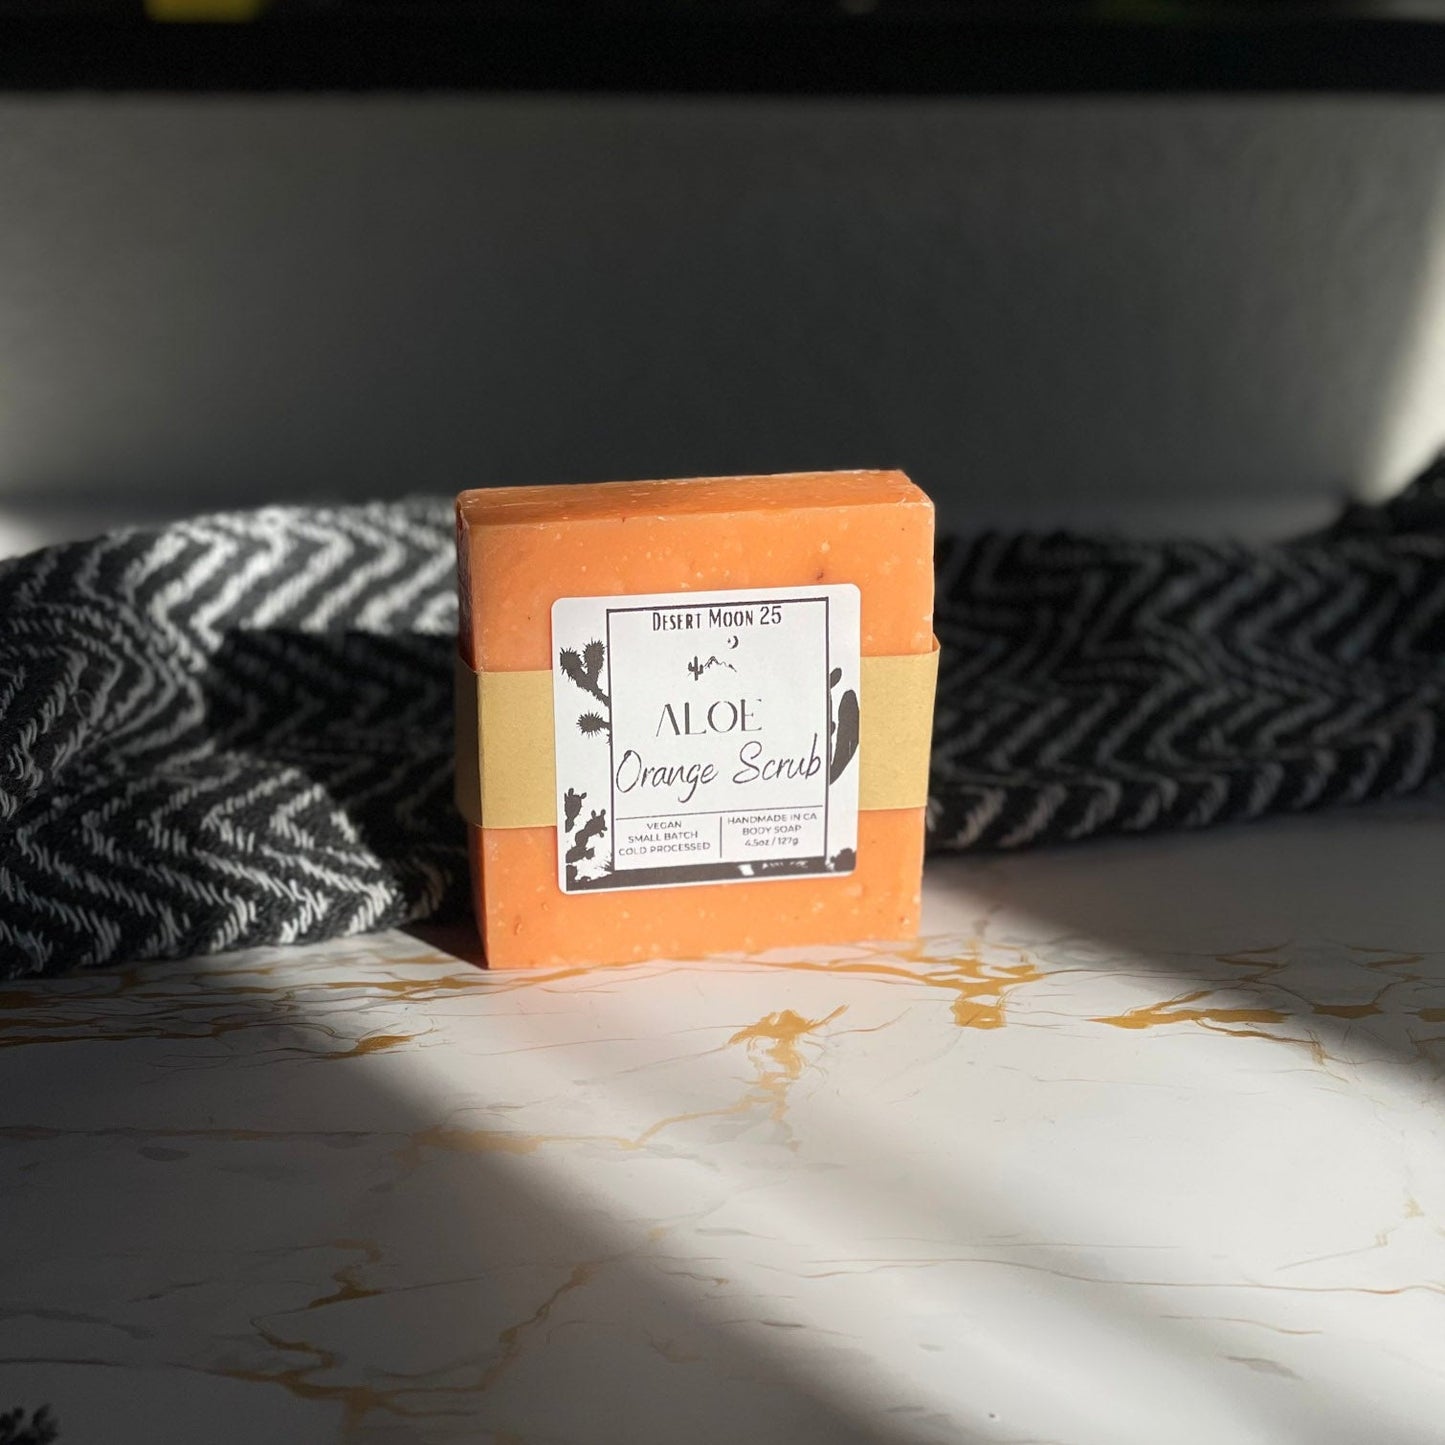 Aloe & Orange Scrub Bar Soap 4.5 oz - Desert Moon 25